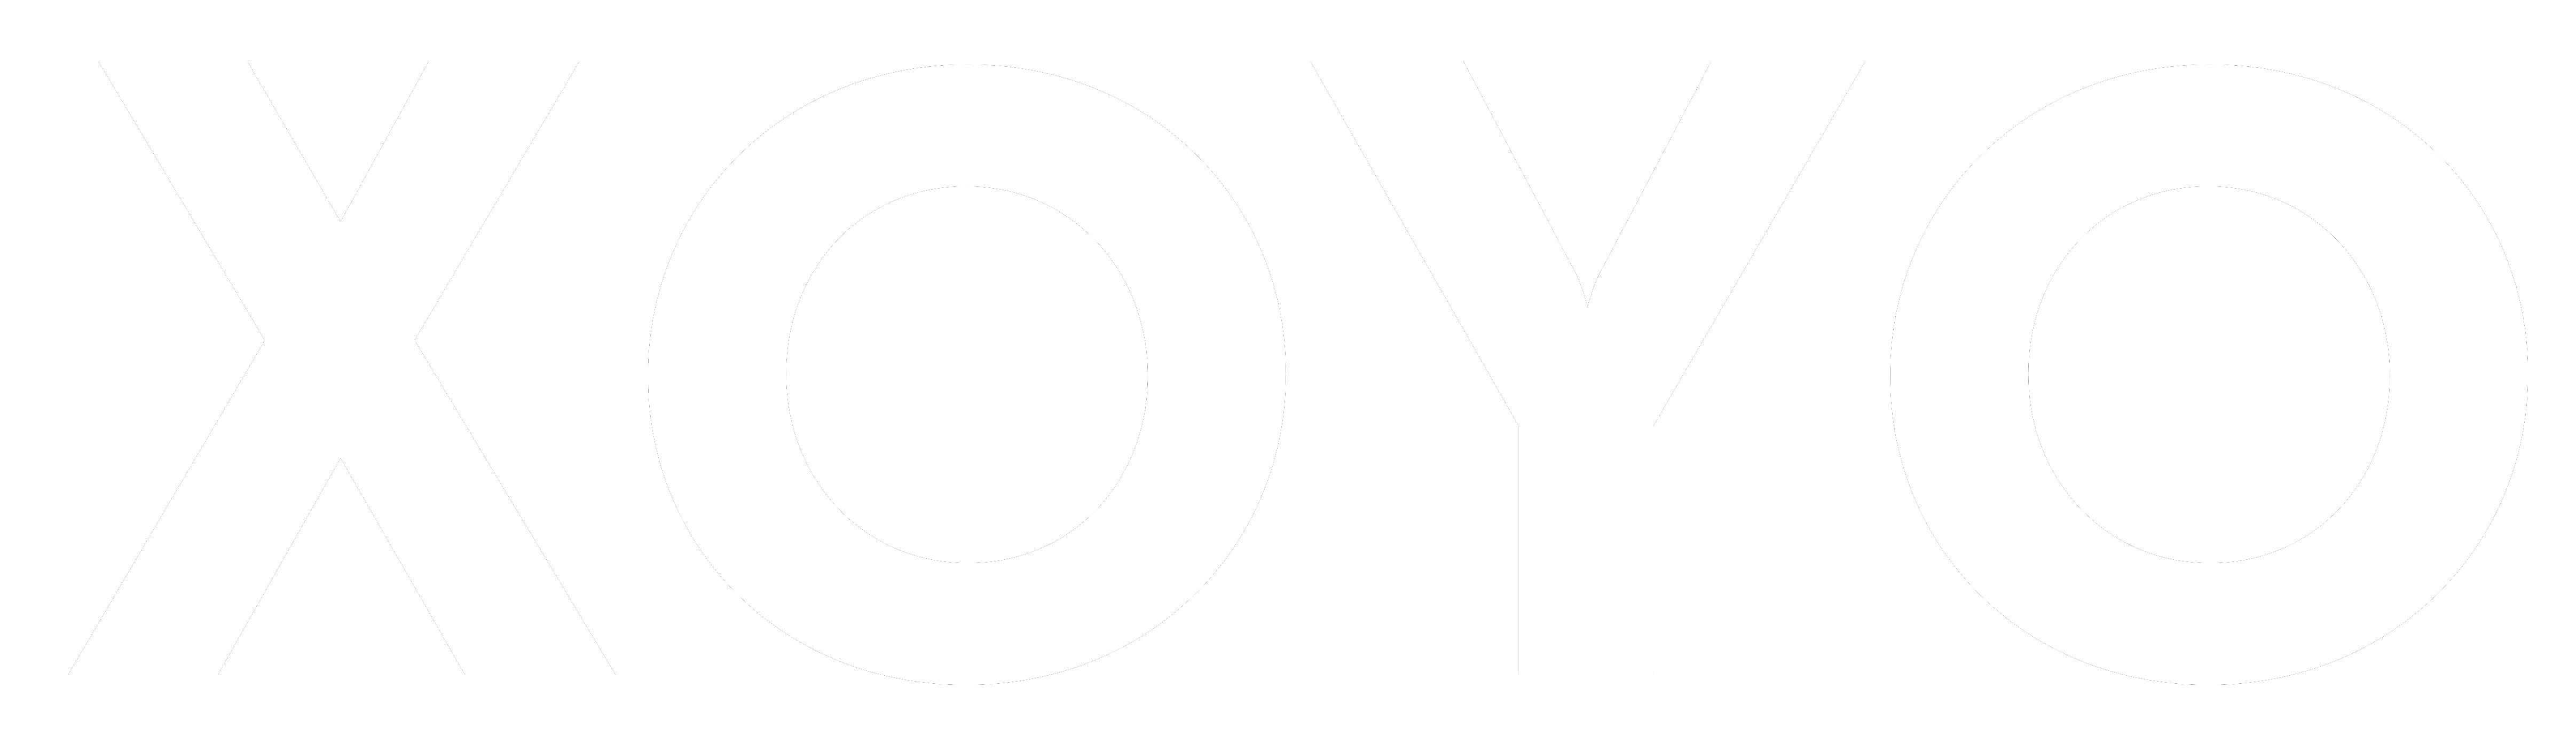 XOYO-OfficialLogo